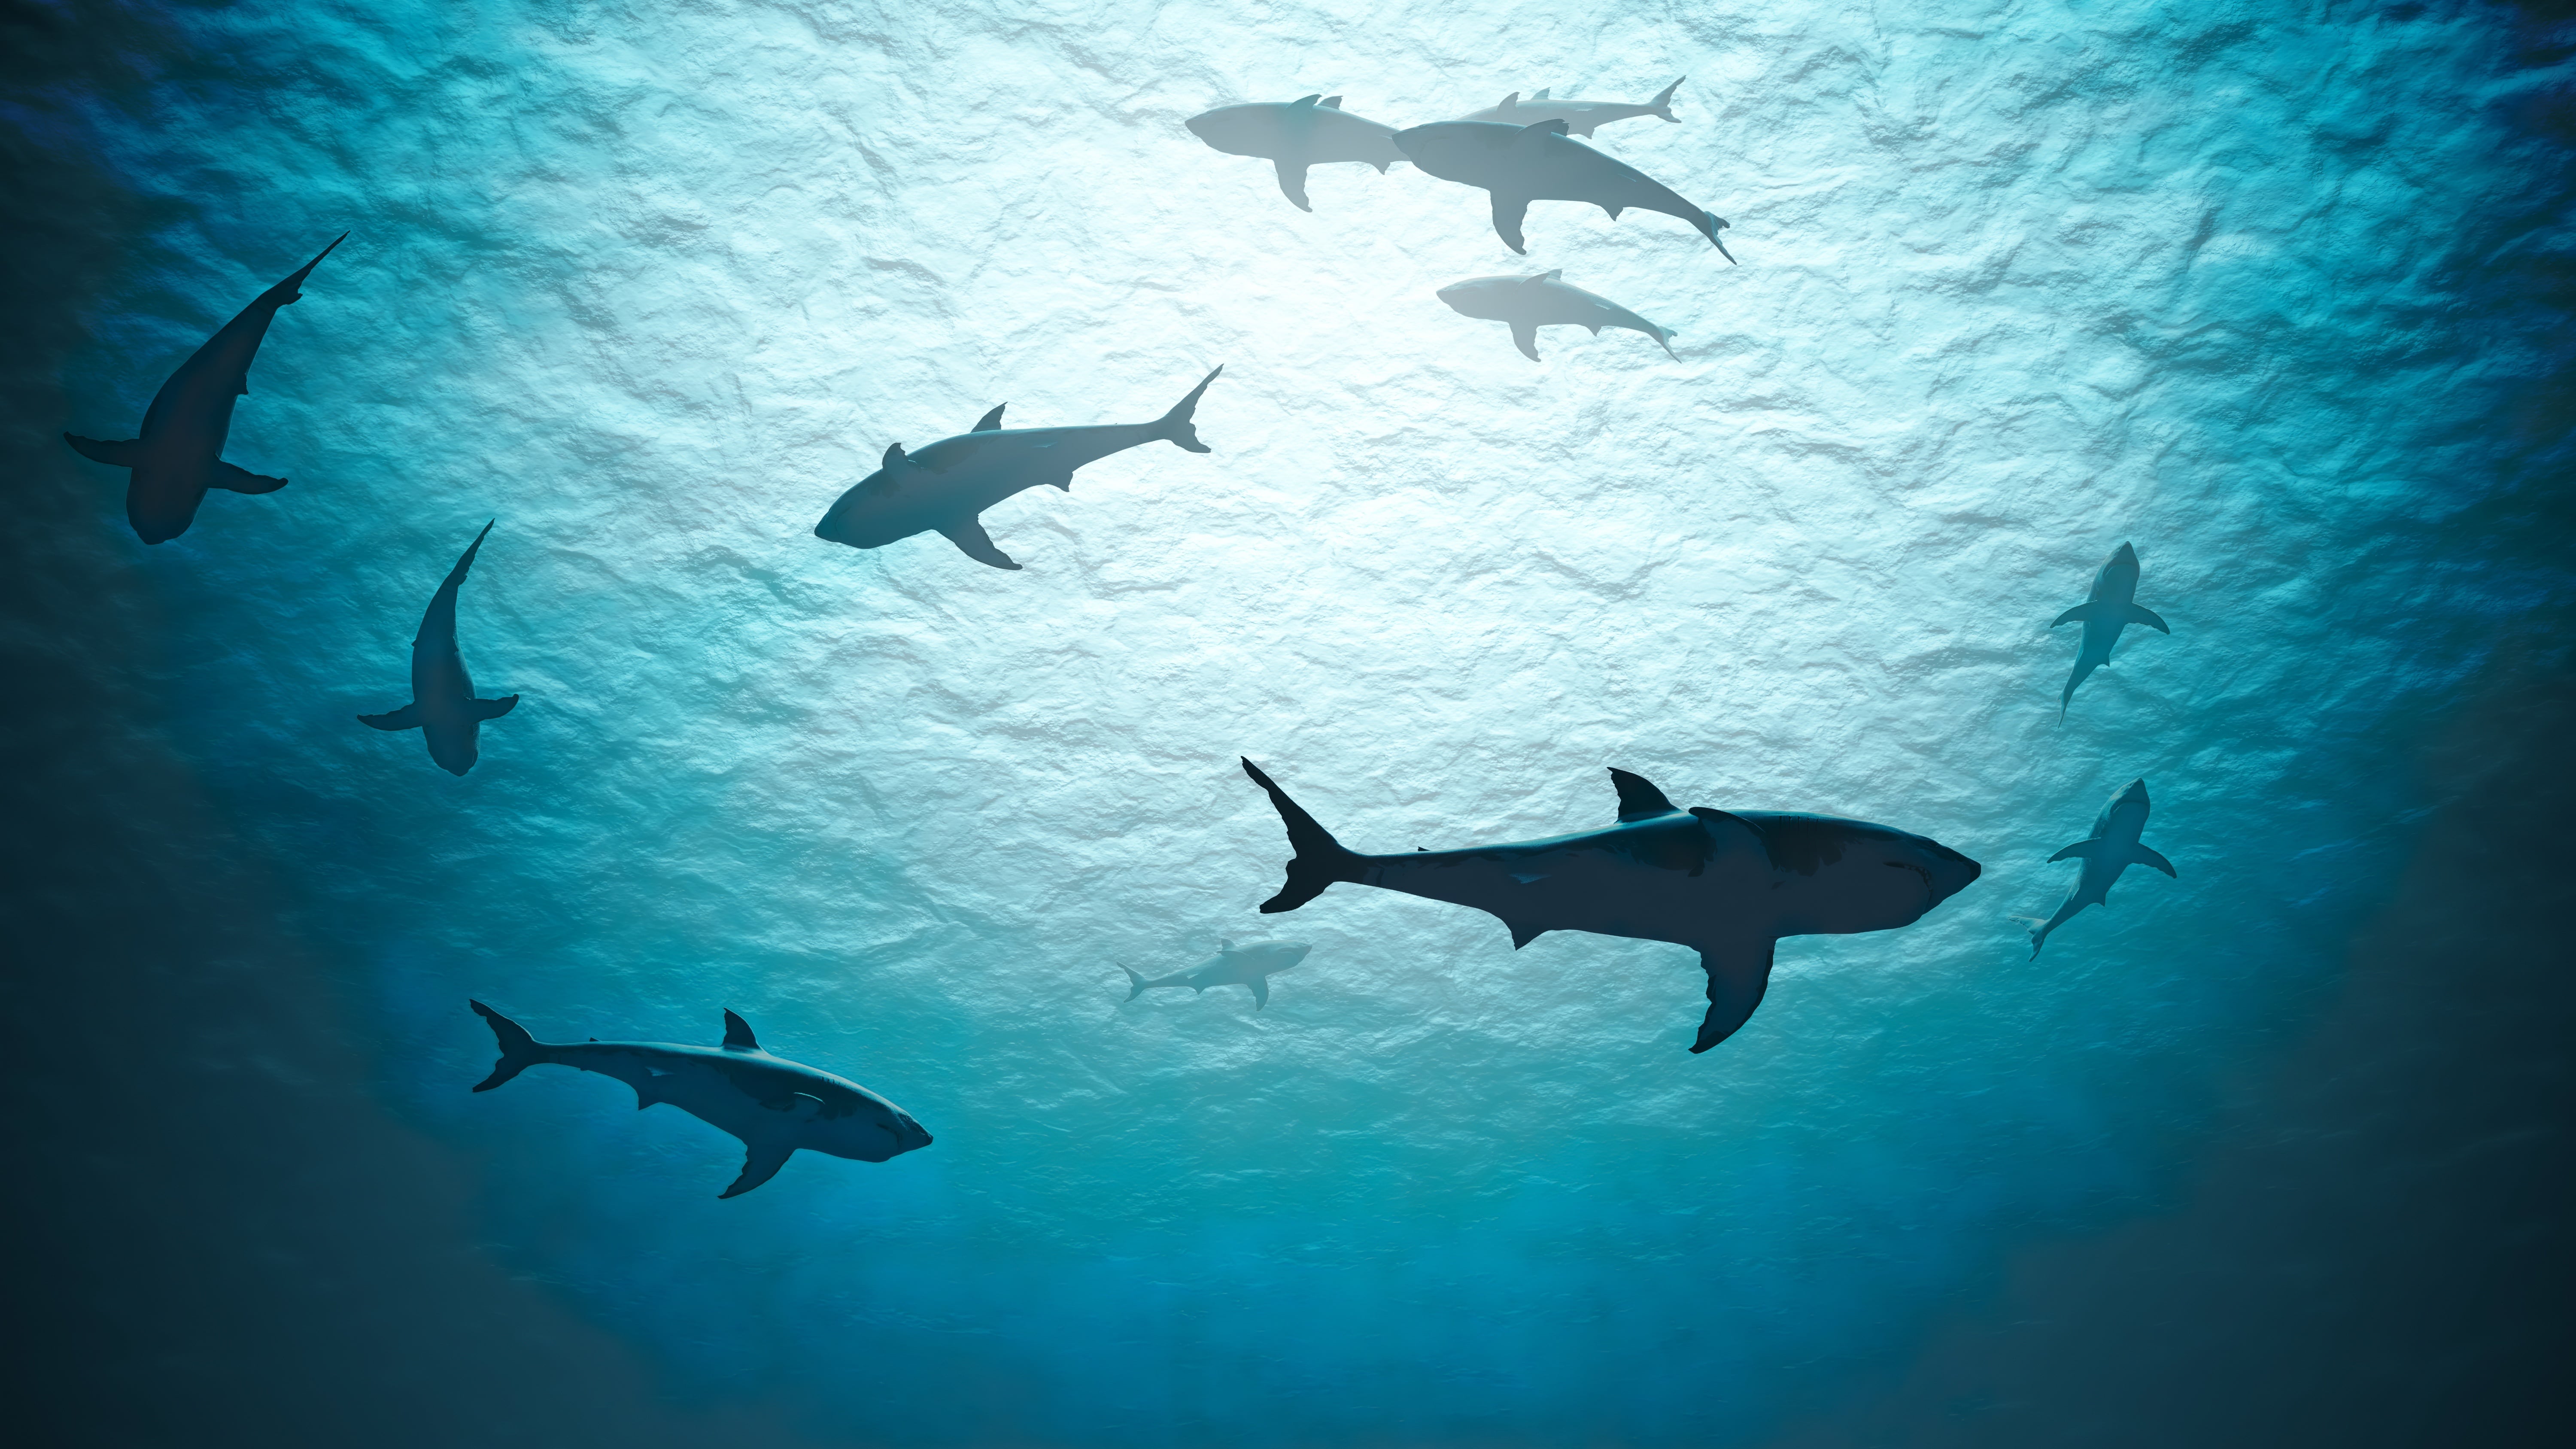 Les requins sont victimes d'une pêche intensive. L'Homme en tue plusieurs millions chaque année. © Vchalup, Adobe Stock